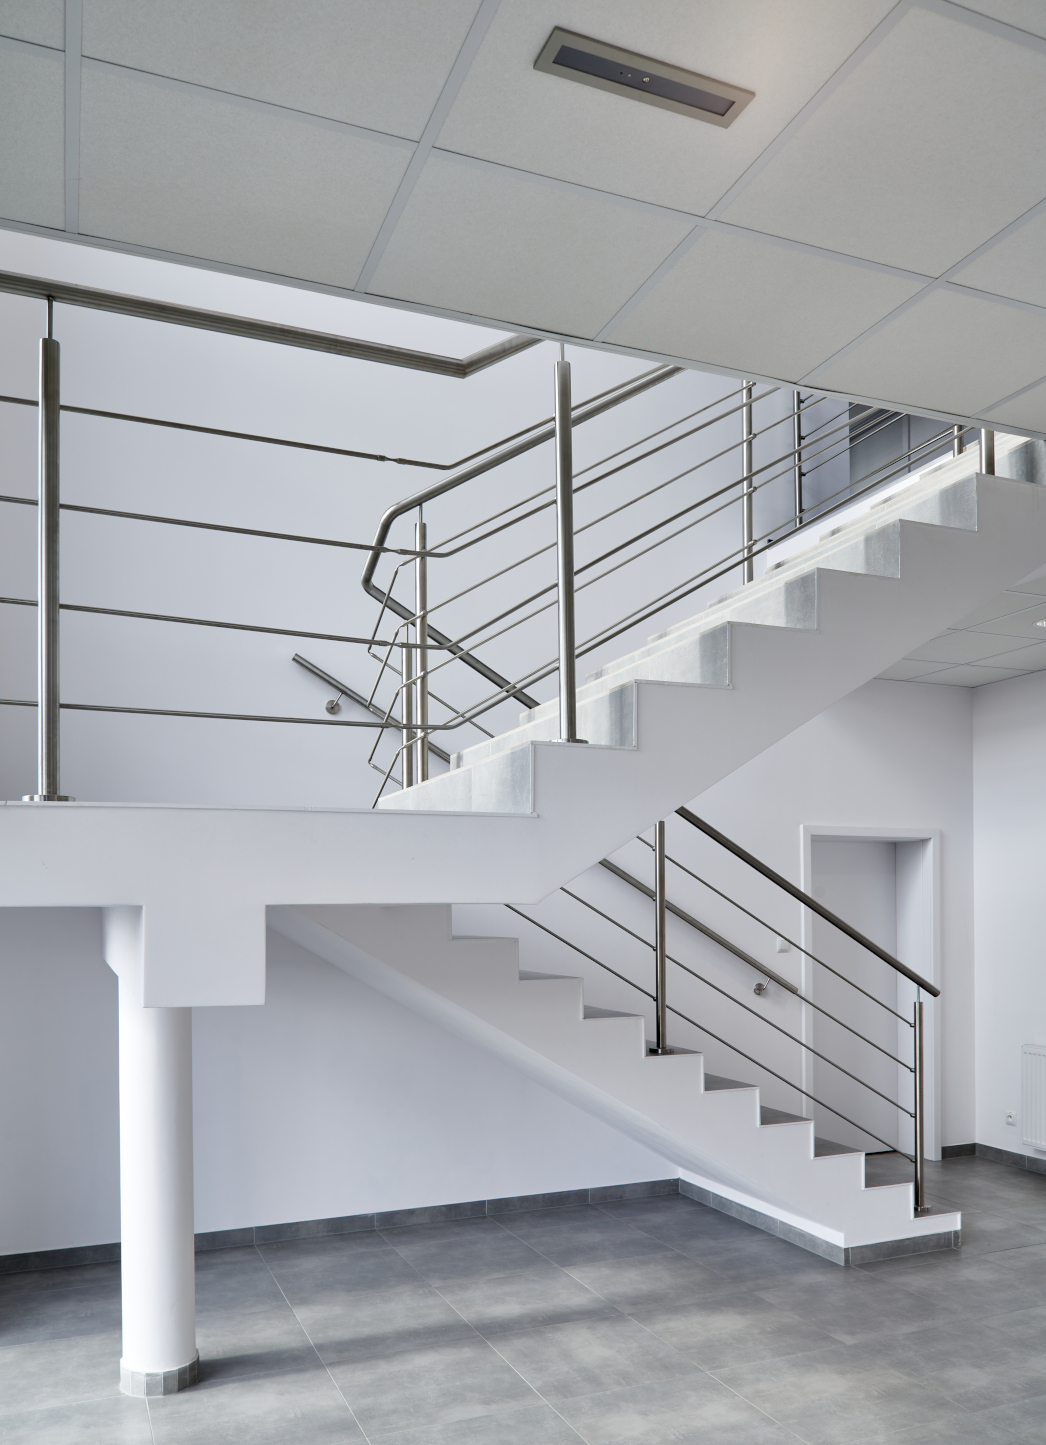 schody w części biurowej - hala produkcyjno-magazynowa, z nowoczesnym biurowcem, zaprojektowana i wybudowana dla Kentaur Production, przez CoBouw Polska, w KSSSE, w Łobzie, woj. zachodniopomorskie